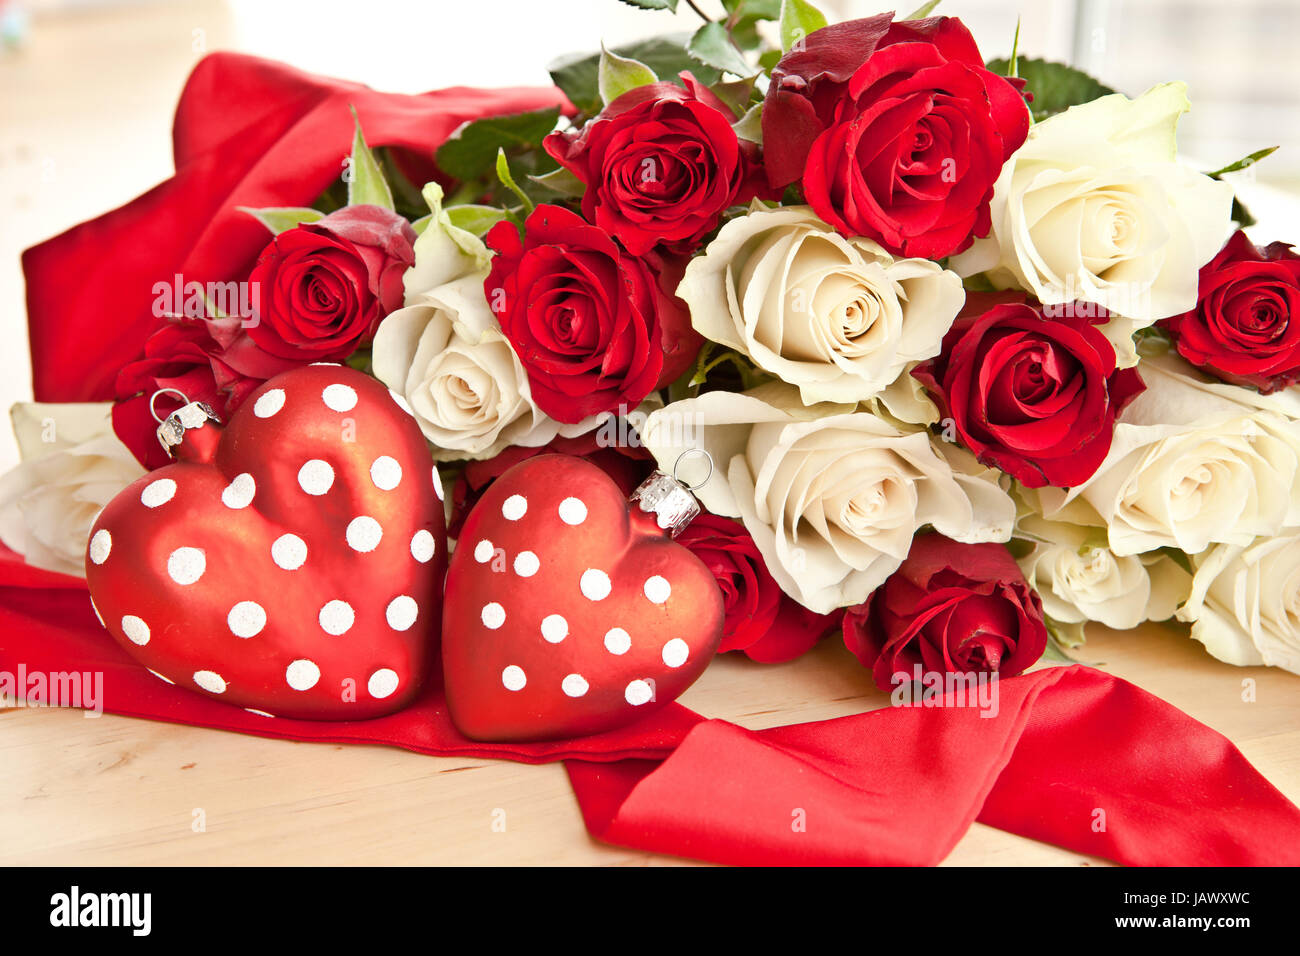 Weisse und rote Rosen mit zwei roten Herzen Stock Photo - Alamy